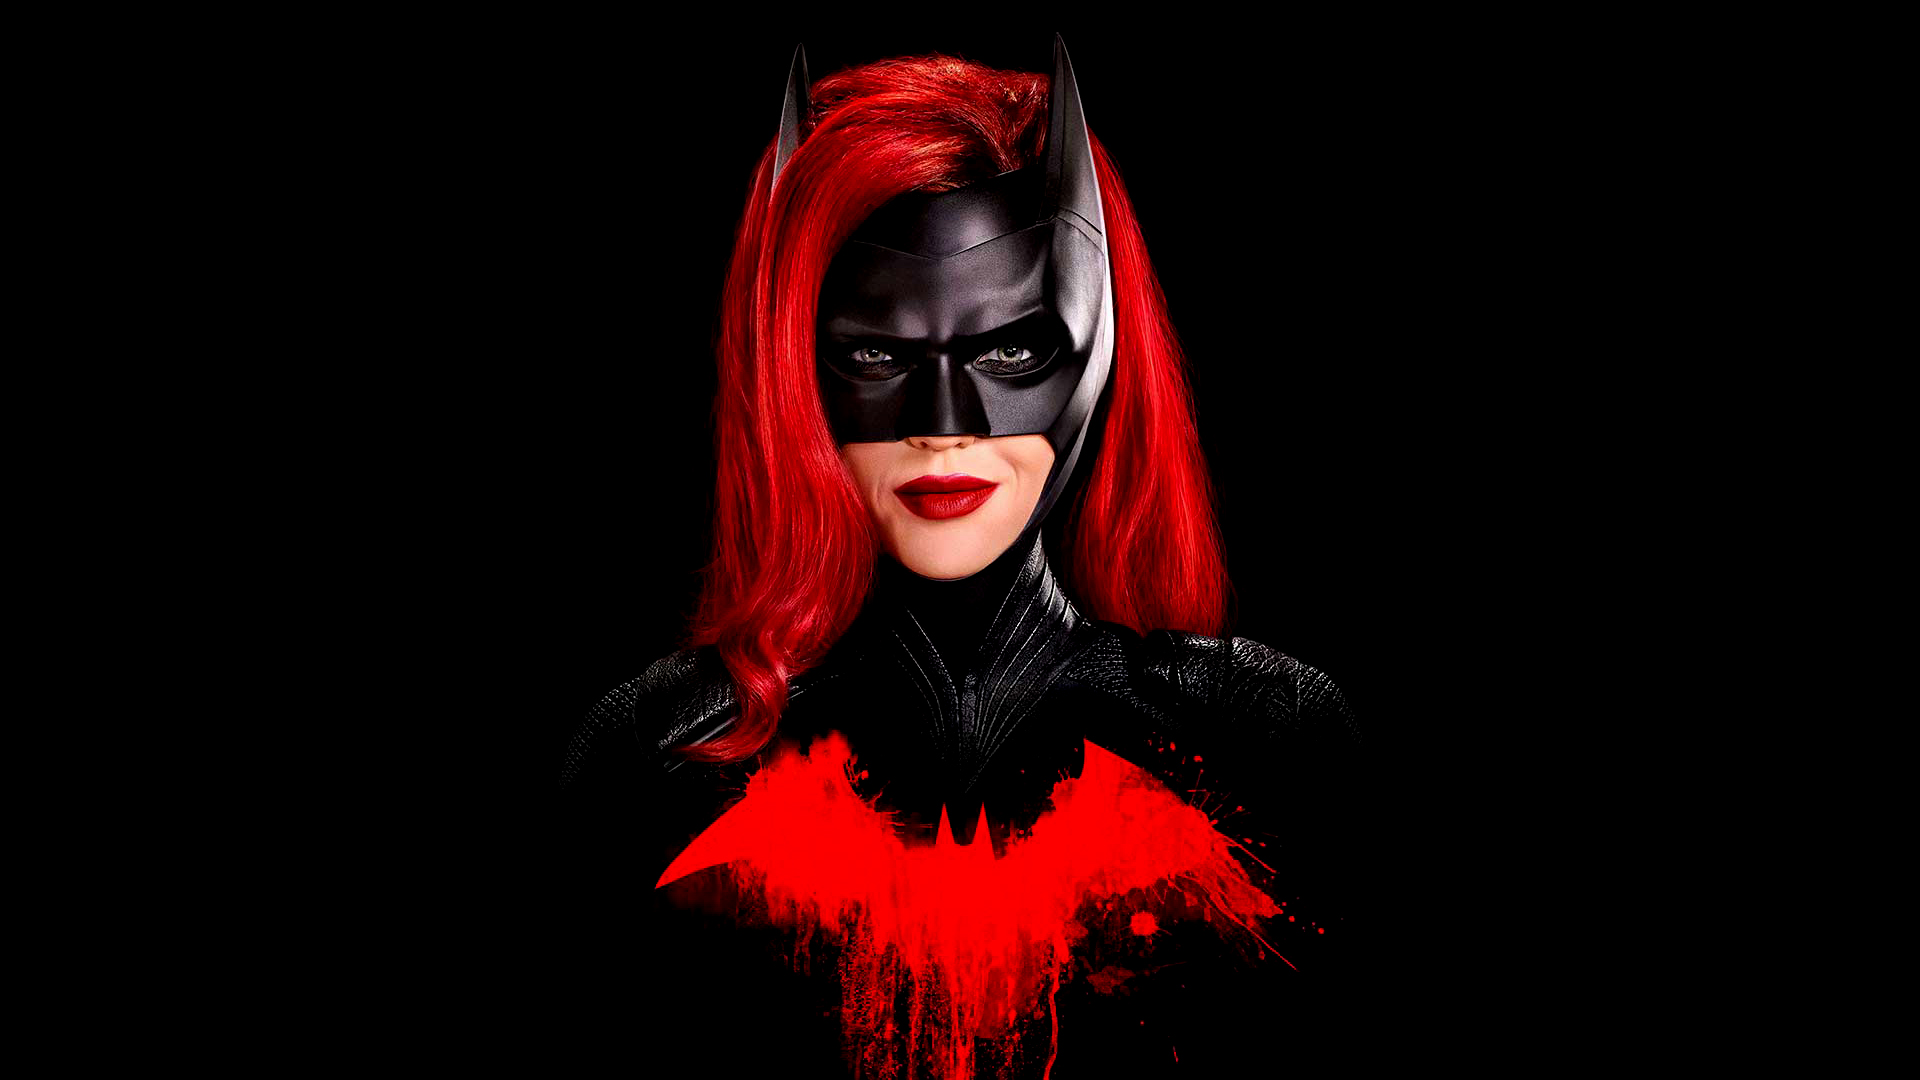 Batwoman Ruby Rose Actress DC Comics TV Frontal View 1920x1080